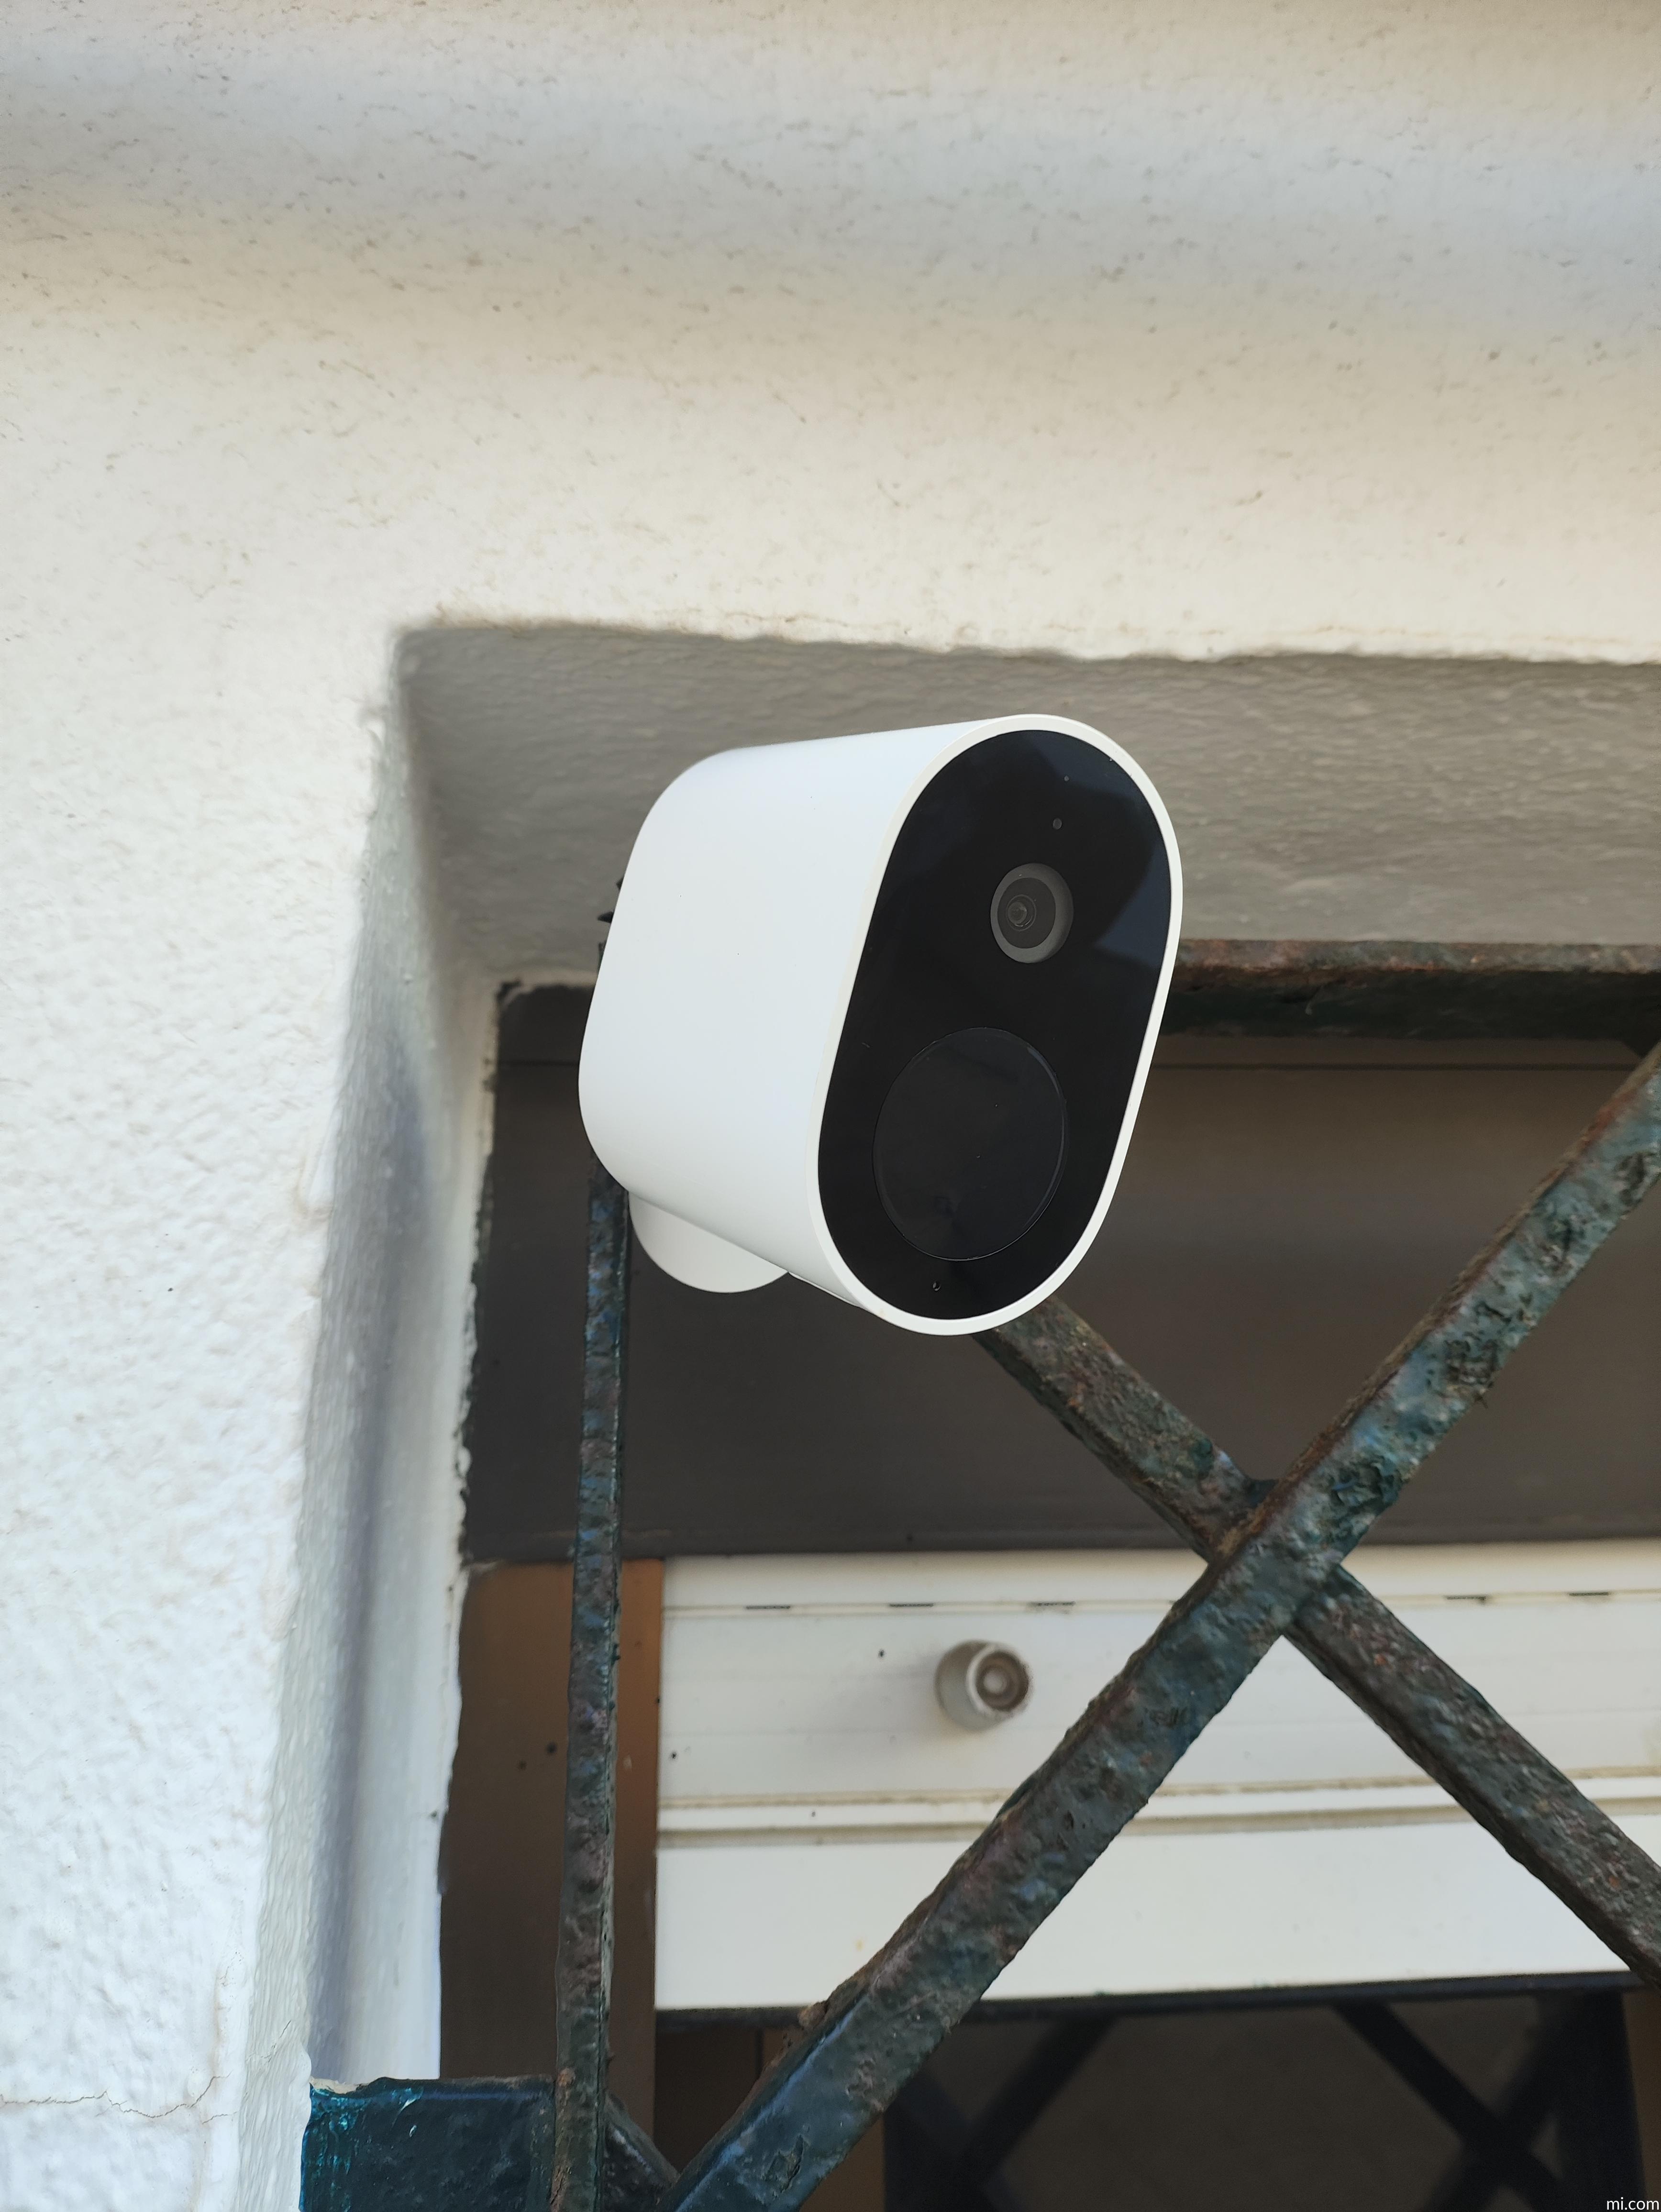 Buscando una cámara de vigilancia de exterior? Esta de Xiaomi es muy barata  - Noticias Xiaomi - XIAOMIADICTOS